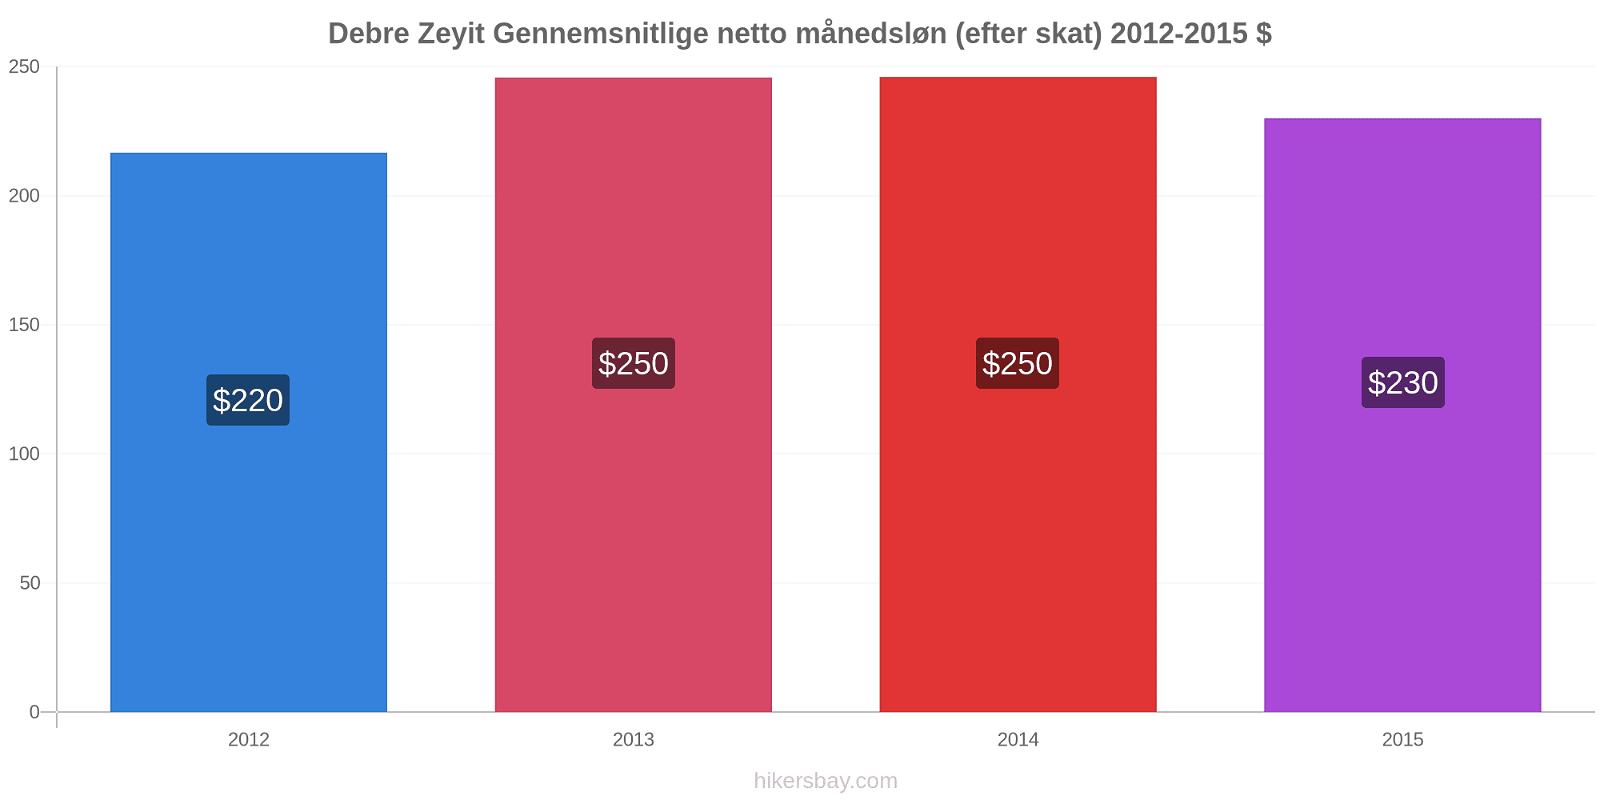 Debre Zeyit prisændringer Gennemsnitlige netto månedsløn (efter skat) hikersbay.com